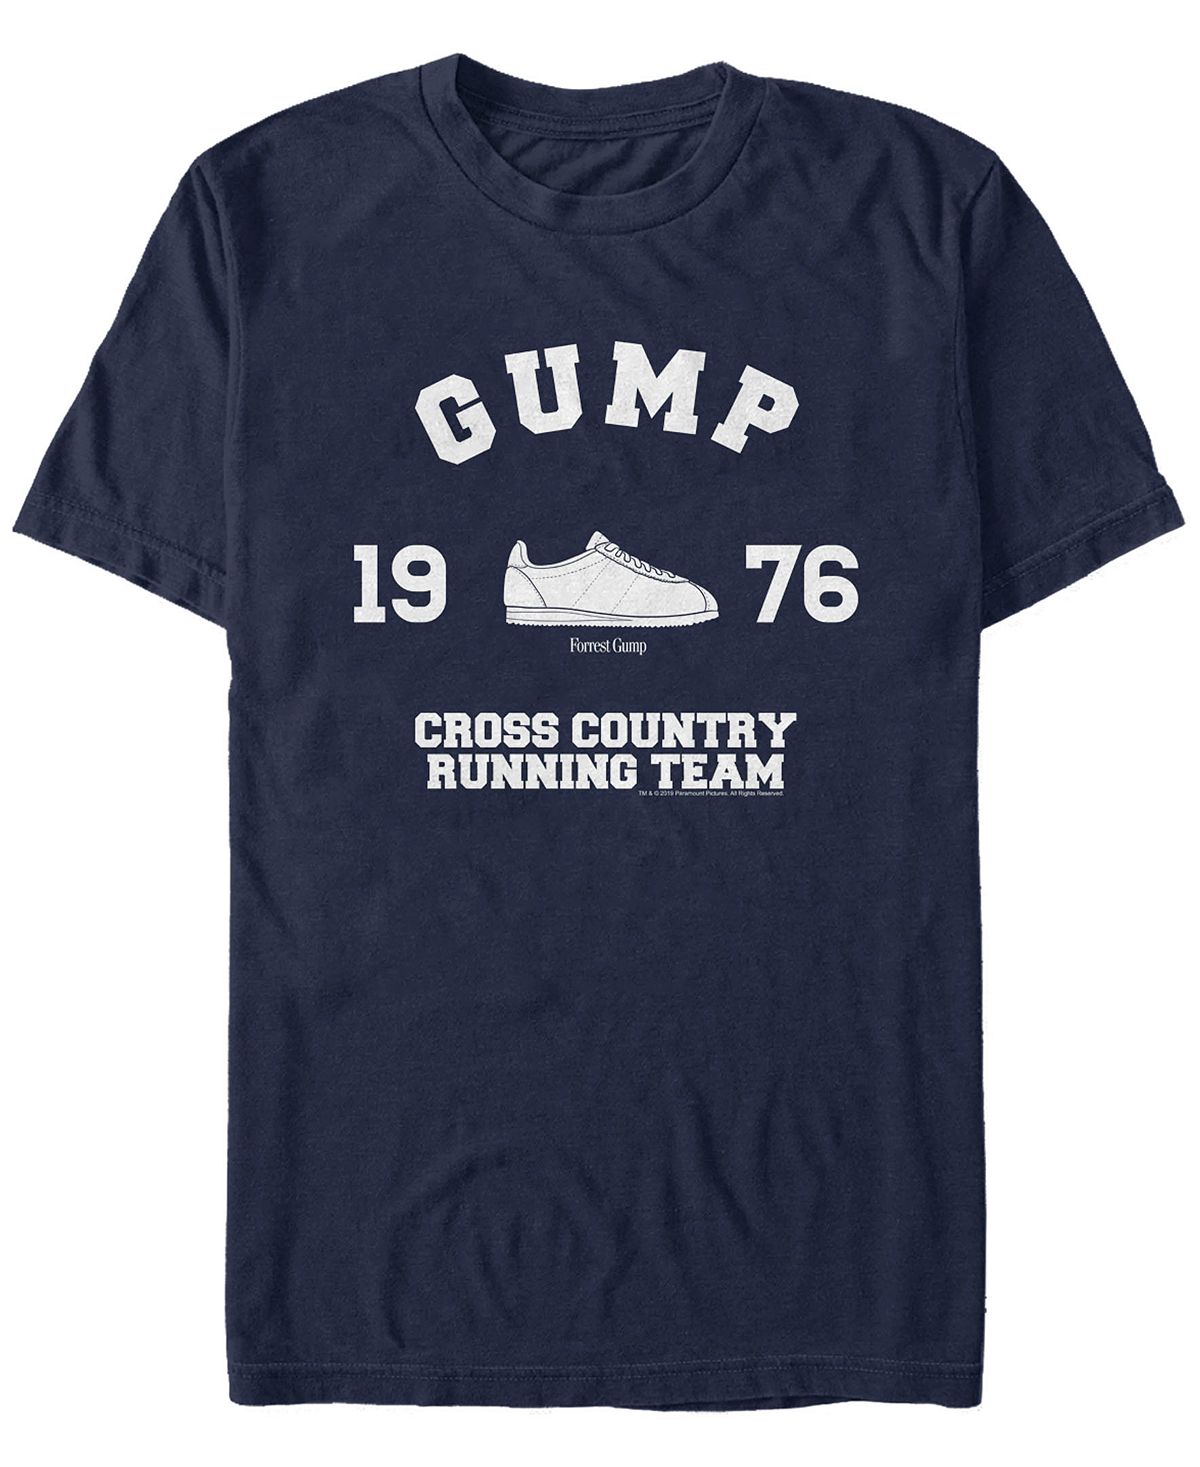 Мужская футболка для бега по пересеченной местности с логотипом и короткими рукавами Fifth Sun, синий ффорде джаспер беги четверг беги или жесткий переплет